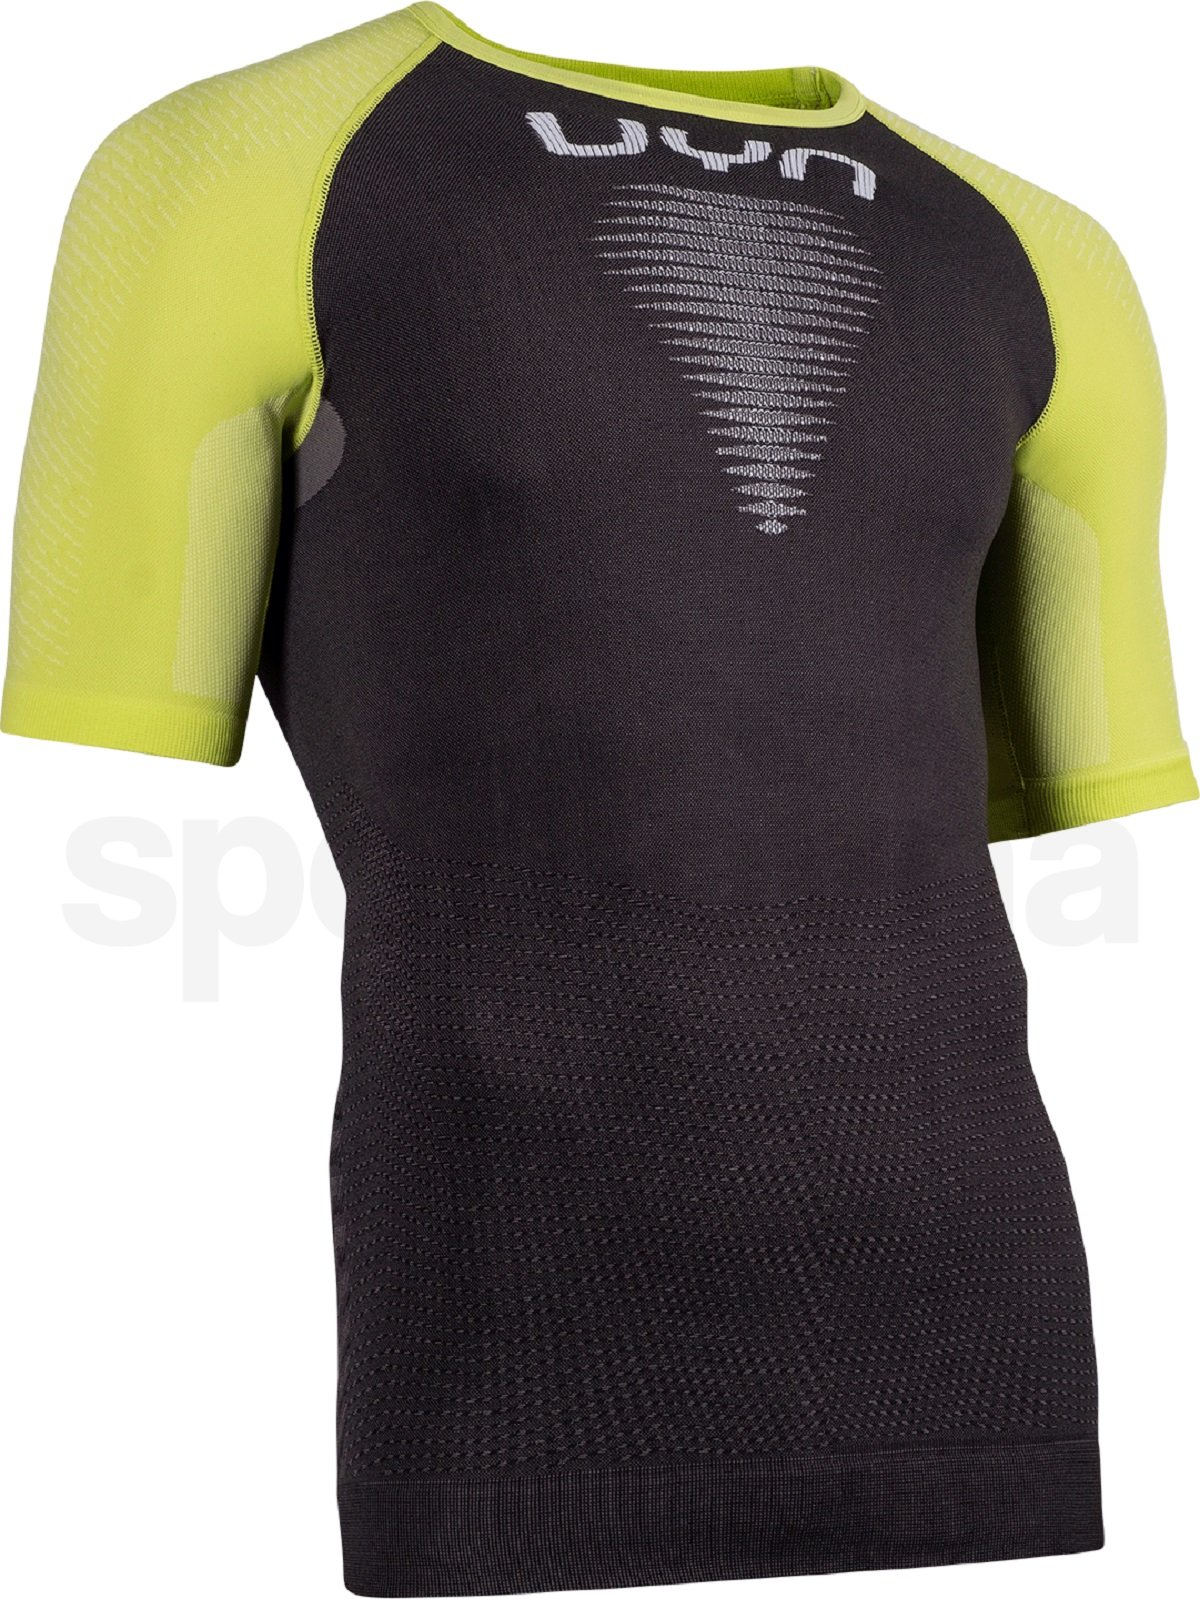 Tričko UYN Marathon OW Shirt SH SL M - černá/žlutá/bílá